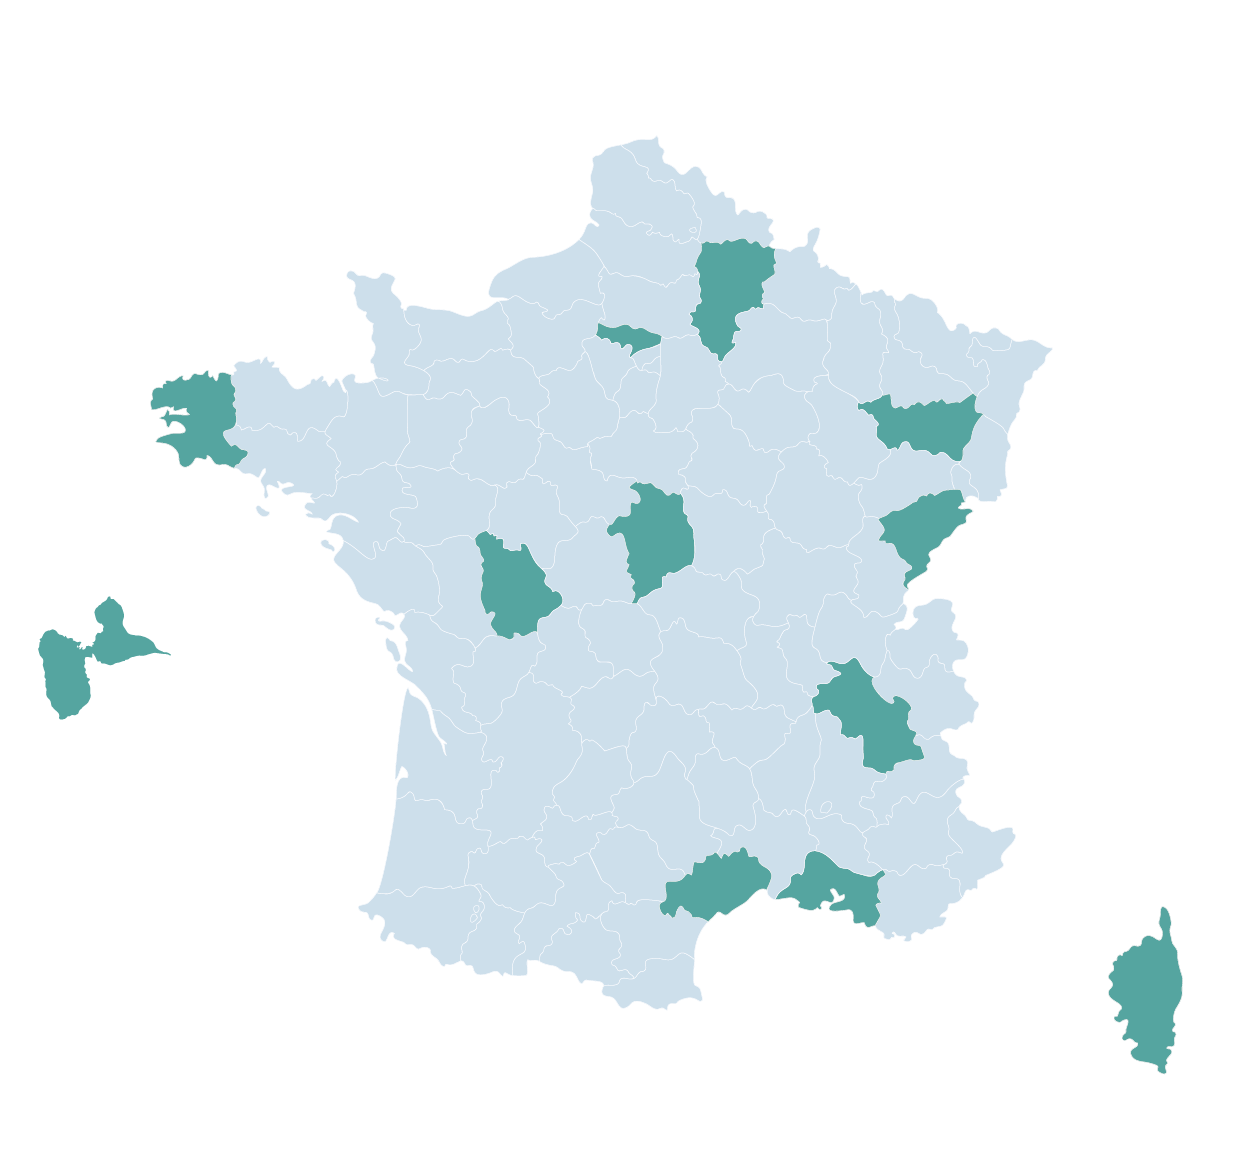 Départements de l'Aisne, du Val d'Oise, Bouches-du-Rhône, le Cher, la Corse-du-Sud, le Doubs, le Finistère, la Guadeloupe, l'Hérault, l'Isère, la Vienne, les Vosges